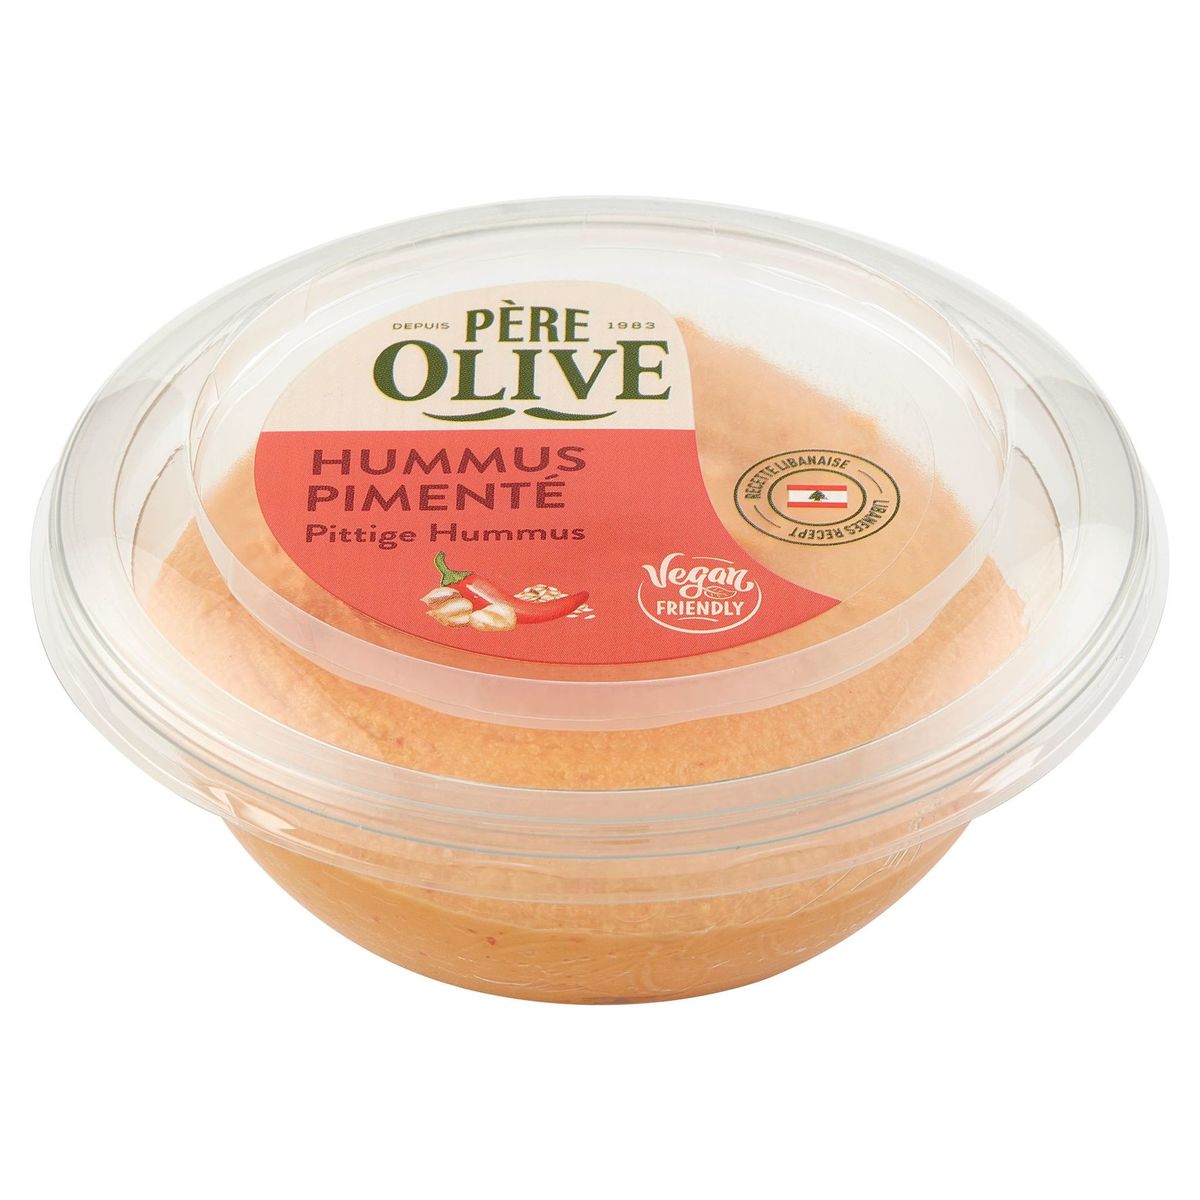 Père Olive Hummus Pimenté 175 g